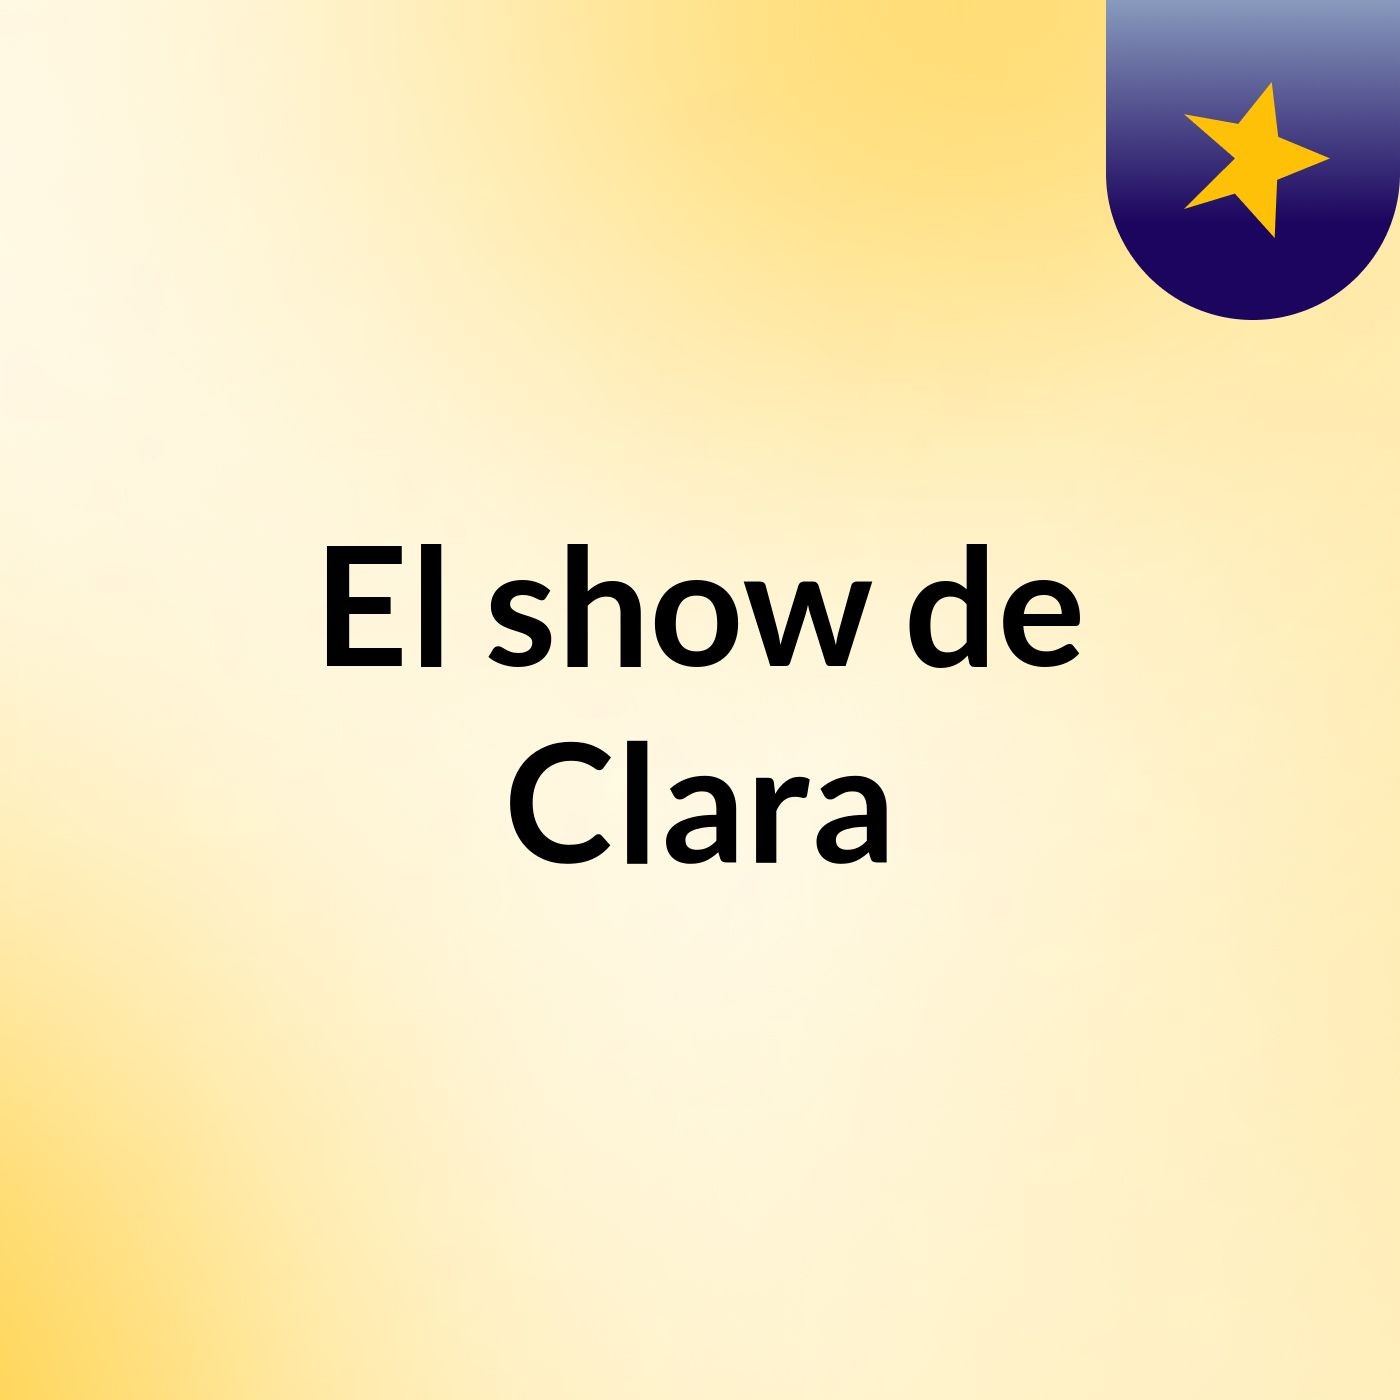 El show de Clara